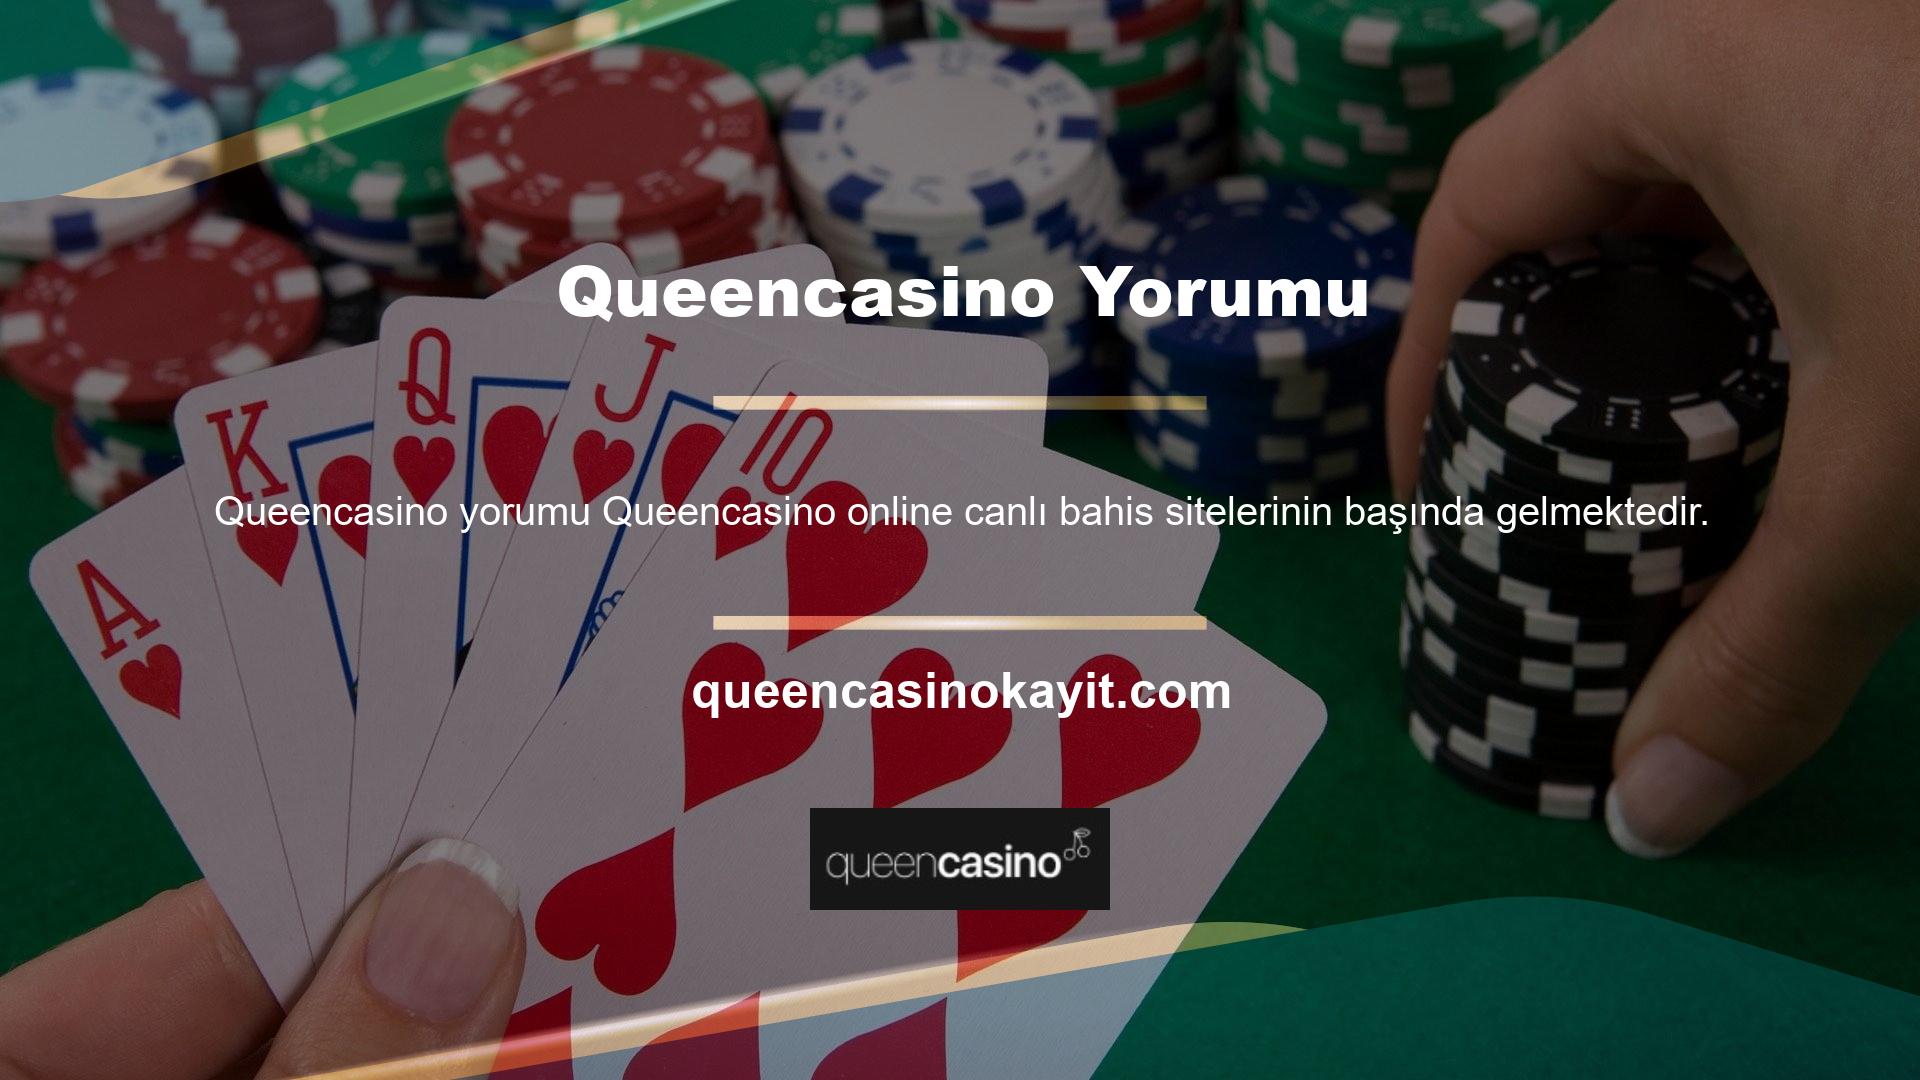 Ancak canlı bahislerin yanı sıra Queencasino web sitesinde casino oyunları da oynayabilirsiniz